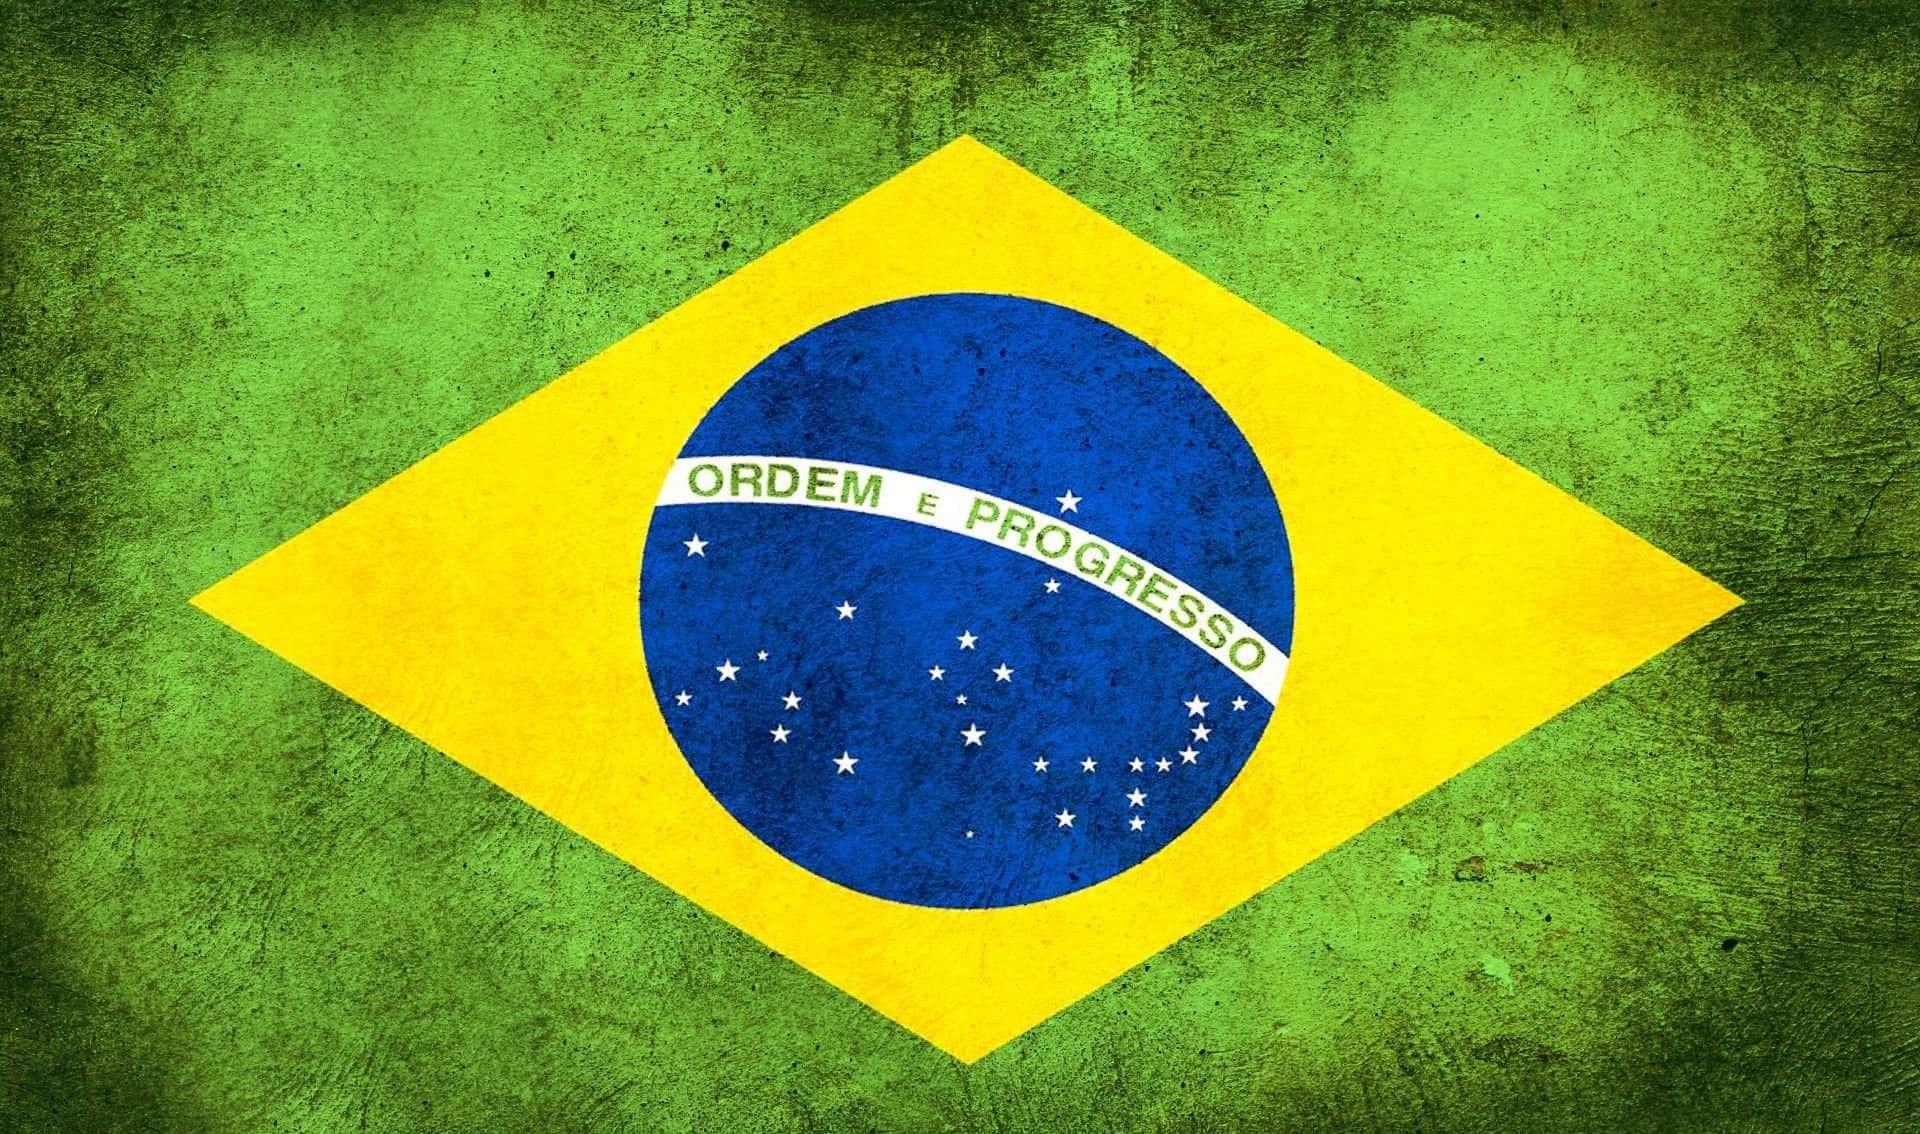 Brasilien1920 X 1134 Baggrund.